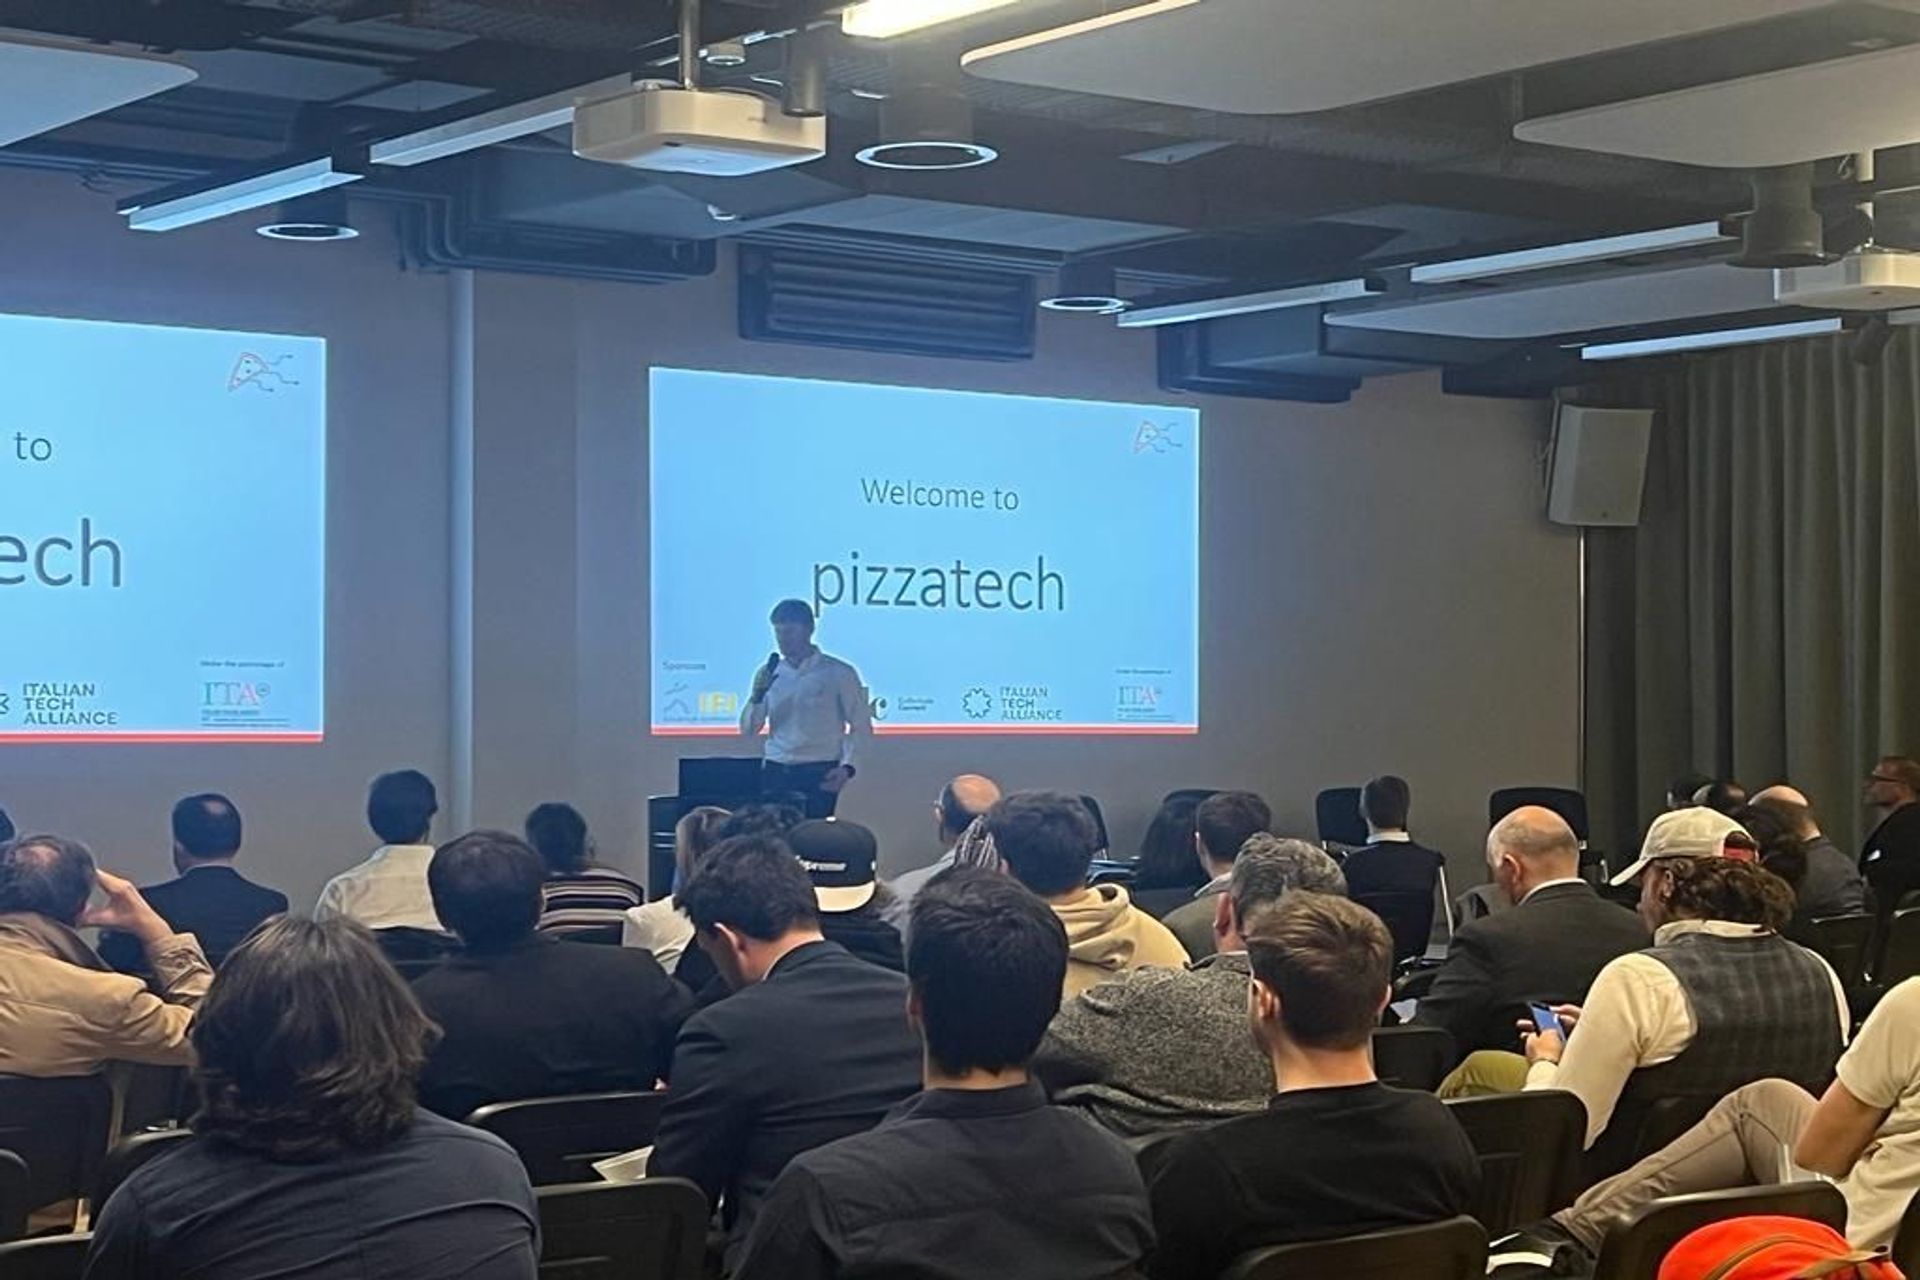 La première édition de la "Italian Tech Night", organisée par le partenariat #pizzatech, a eu lieu le soir du 24 mars 2022 au Startup Space by IFJ à Schlieren, près de Zurich : le discours d'introduction de l'organisatrice Gianmaria Sbetta